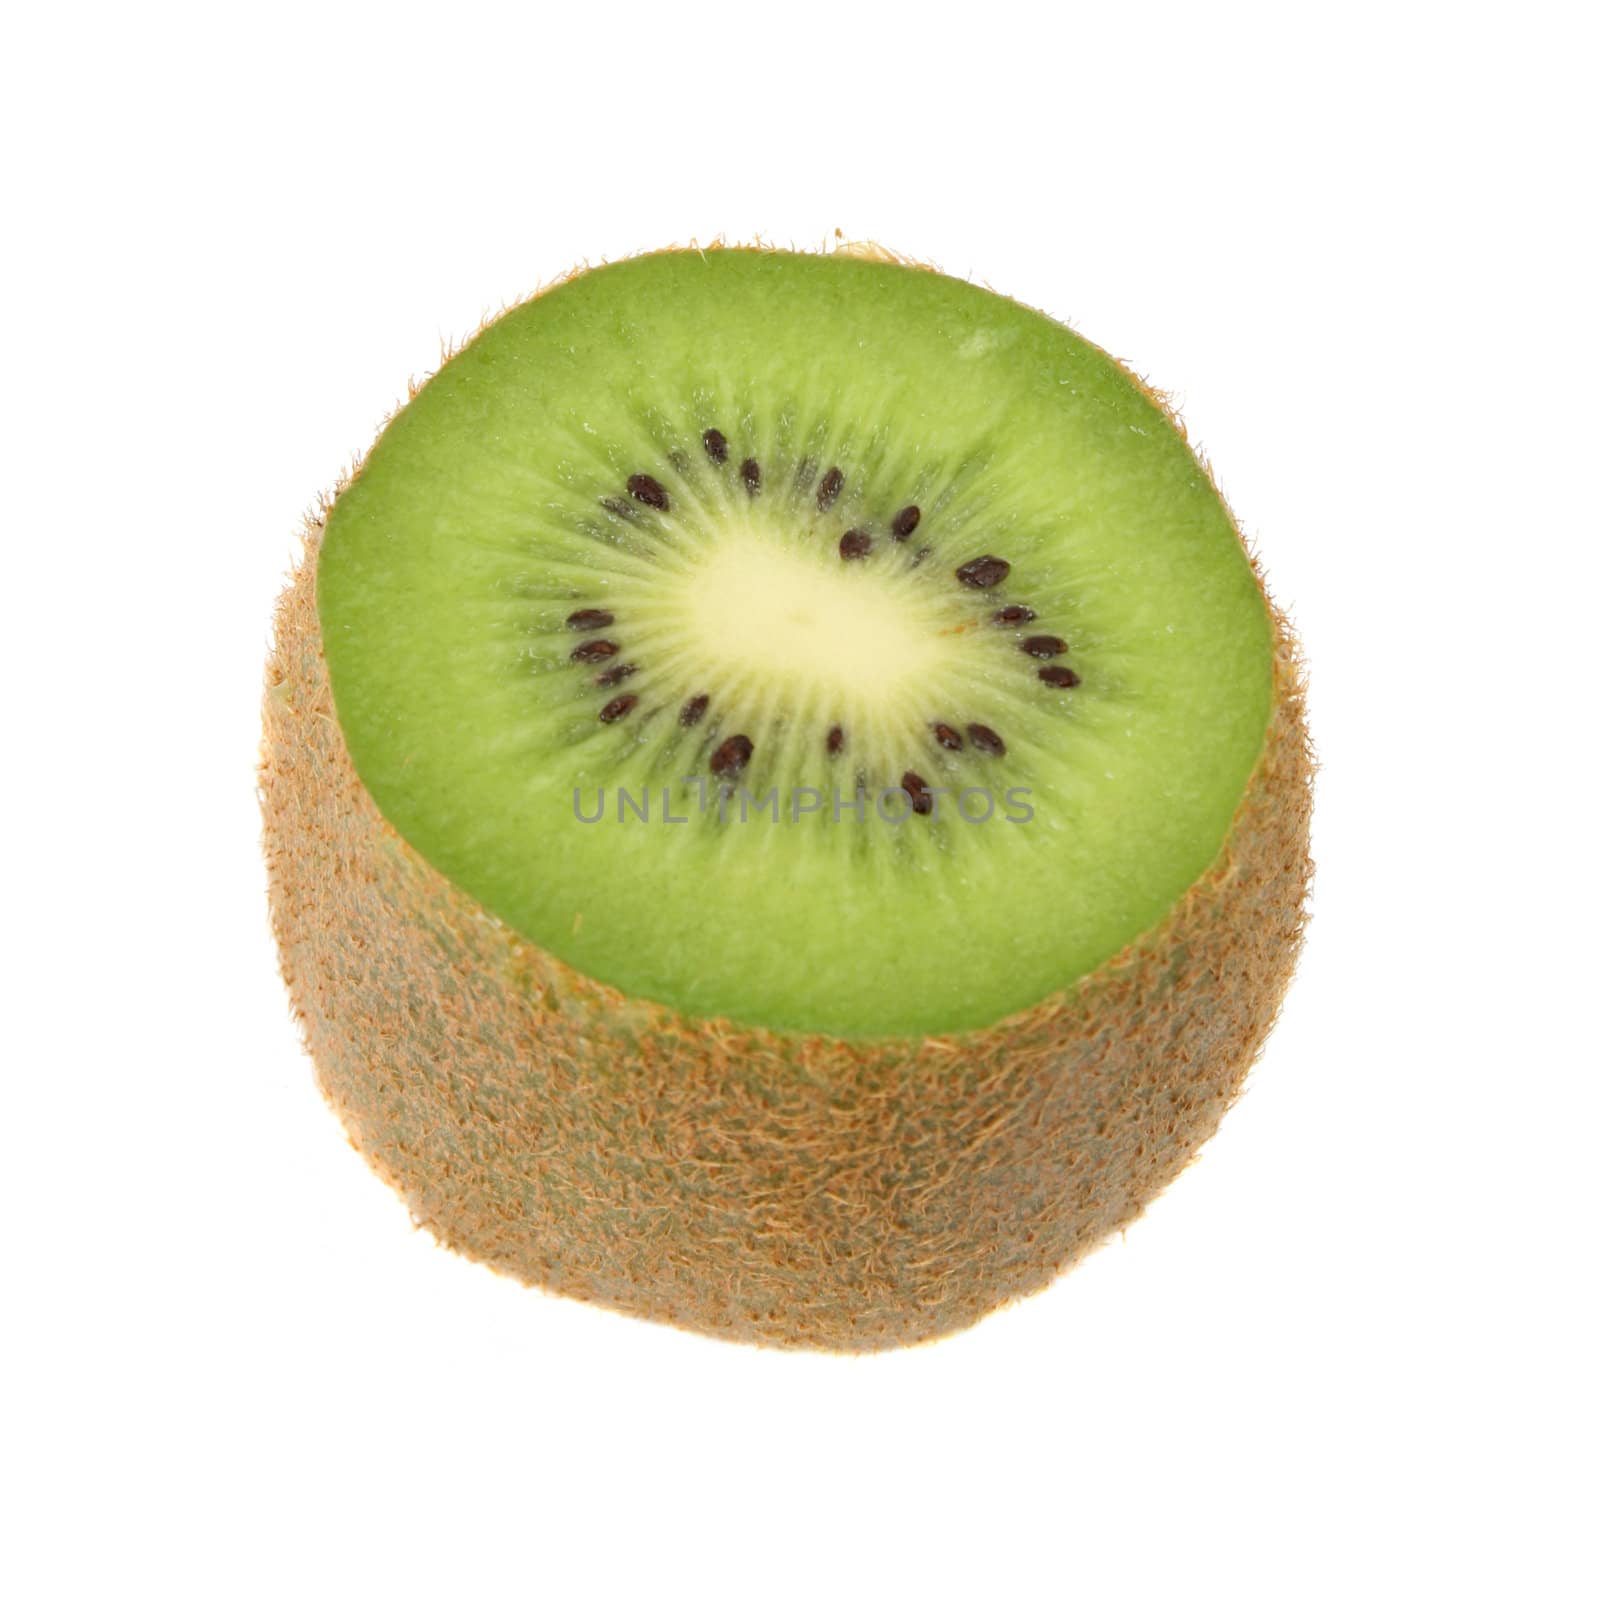 One sliced Kiwi fruit on a white background